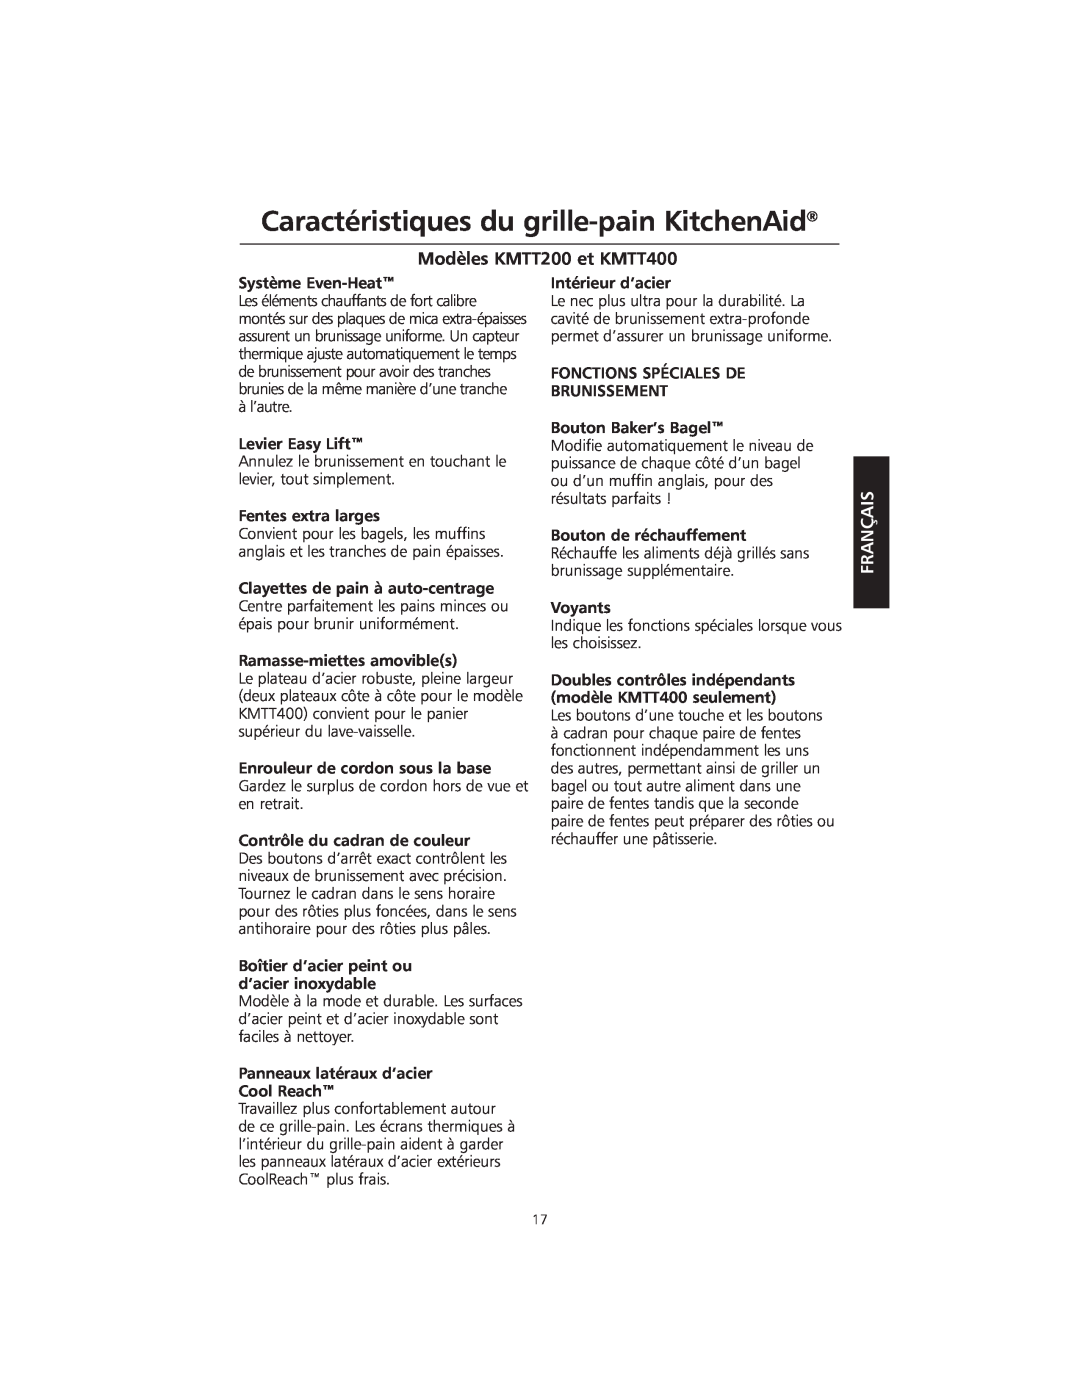 KitchenAid manual Caractéristiques du grille-painKitchenAid, Modèles KMTT200 et KMTT400, Français 